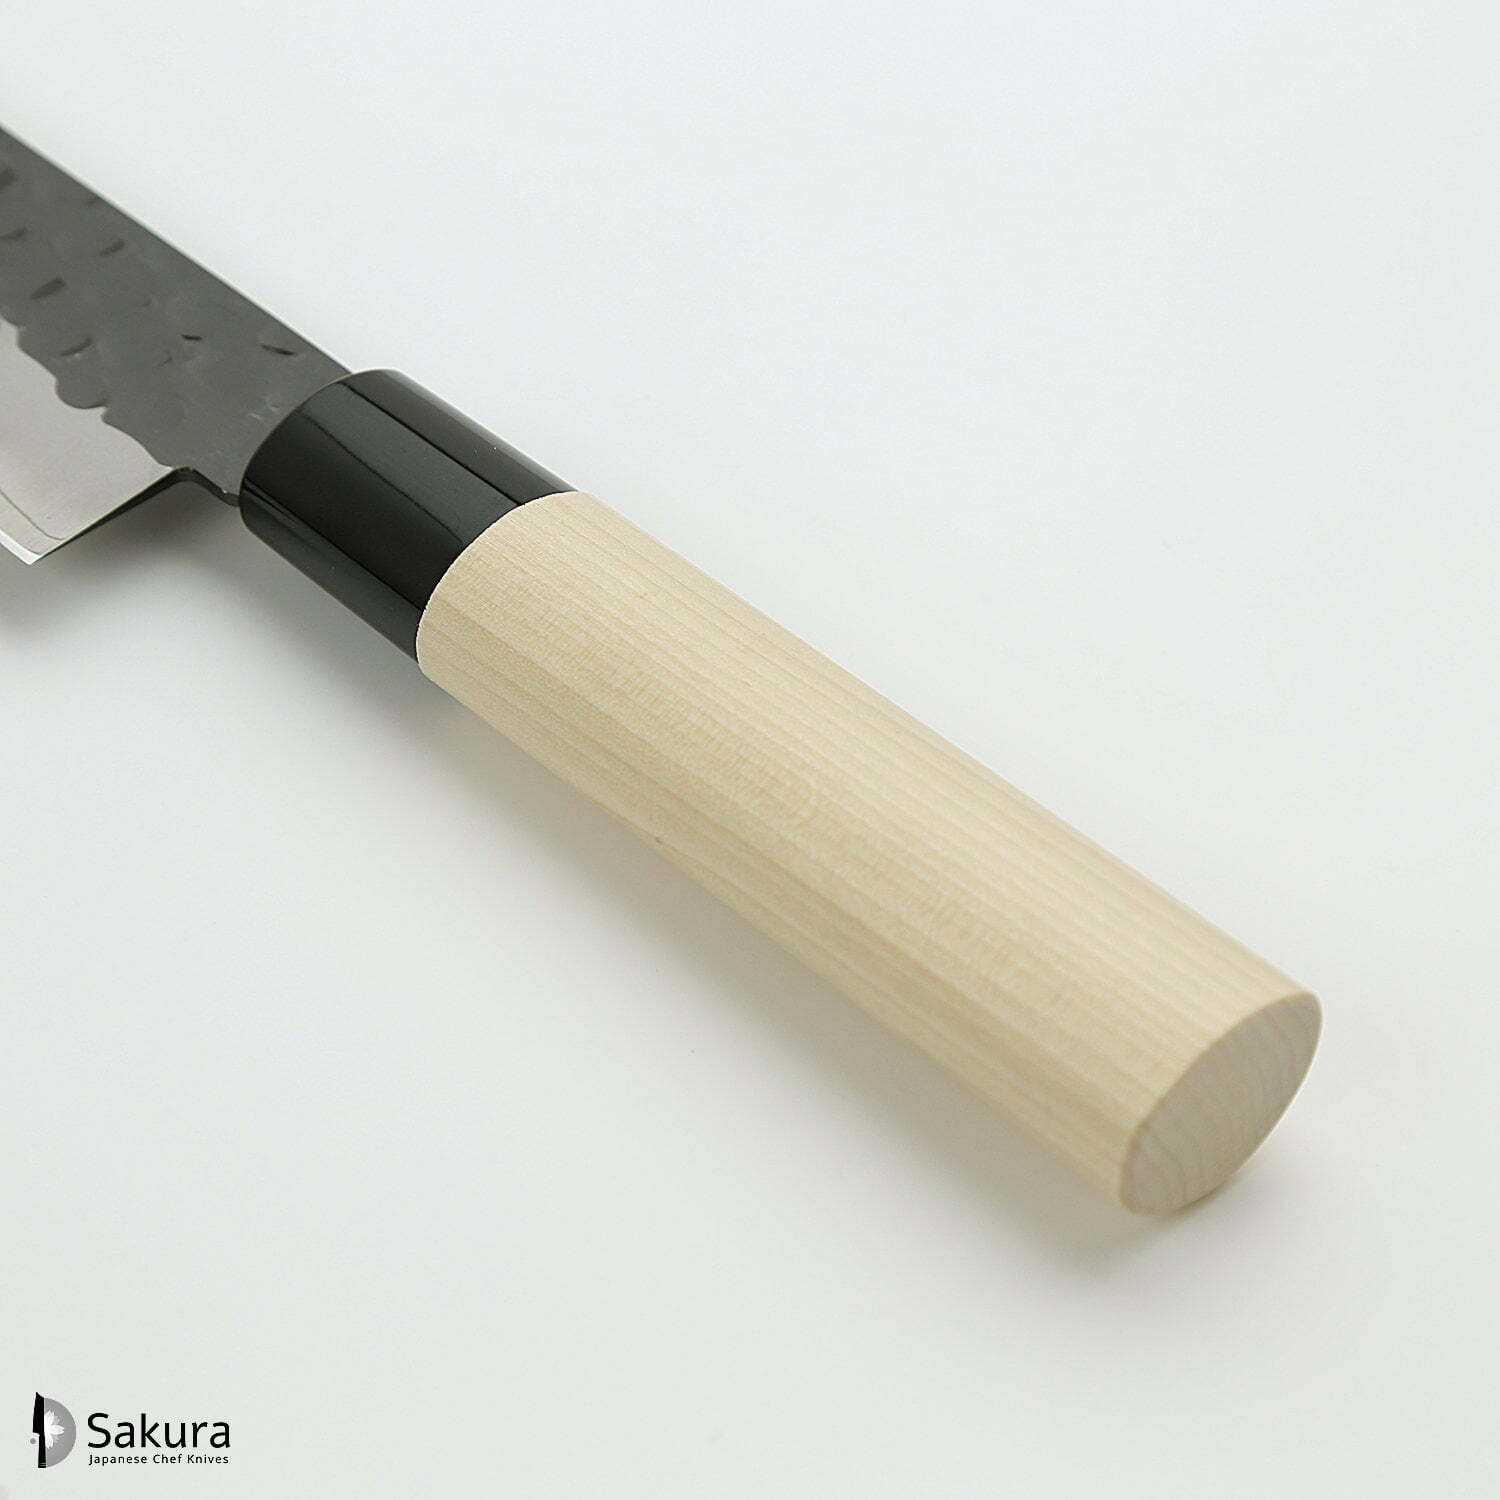 סכין שף רב-תכליתית גִּיוּטוֹ 210מ״מ מחוזקת 3 שכבות: פלדת פחמן יפנית VG-10 עטופה פלדת אל-חלד גימור קורואיצ׳י שחור עם ריקוע פטיש טוג׳ירו יפן